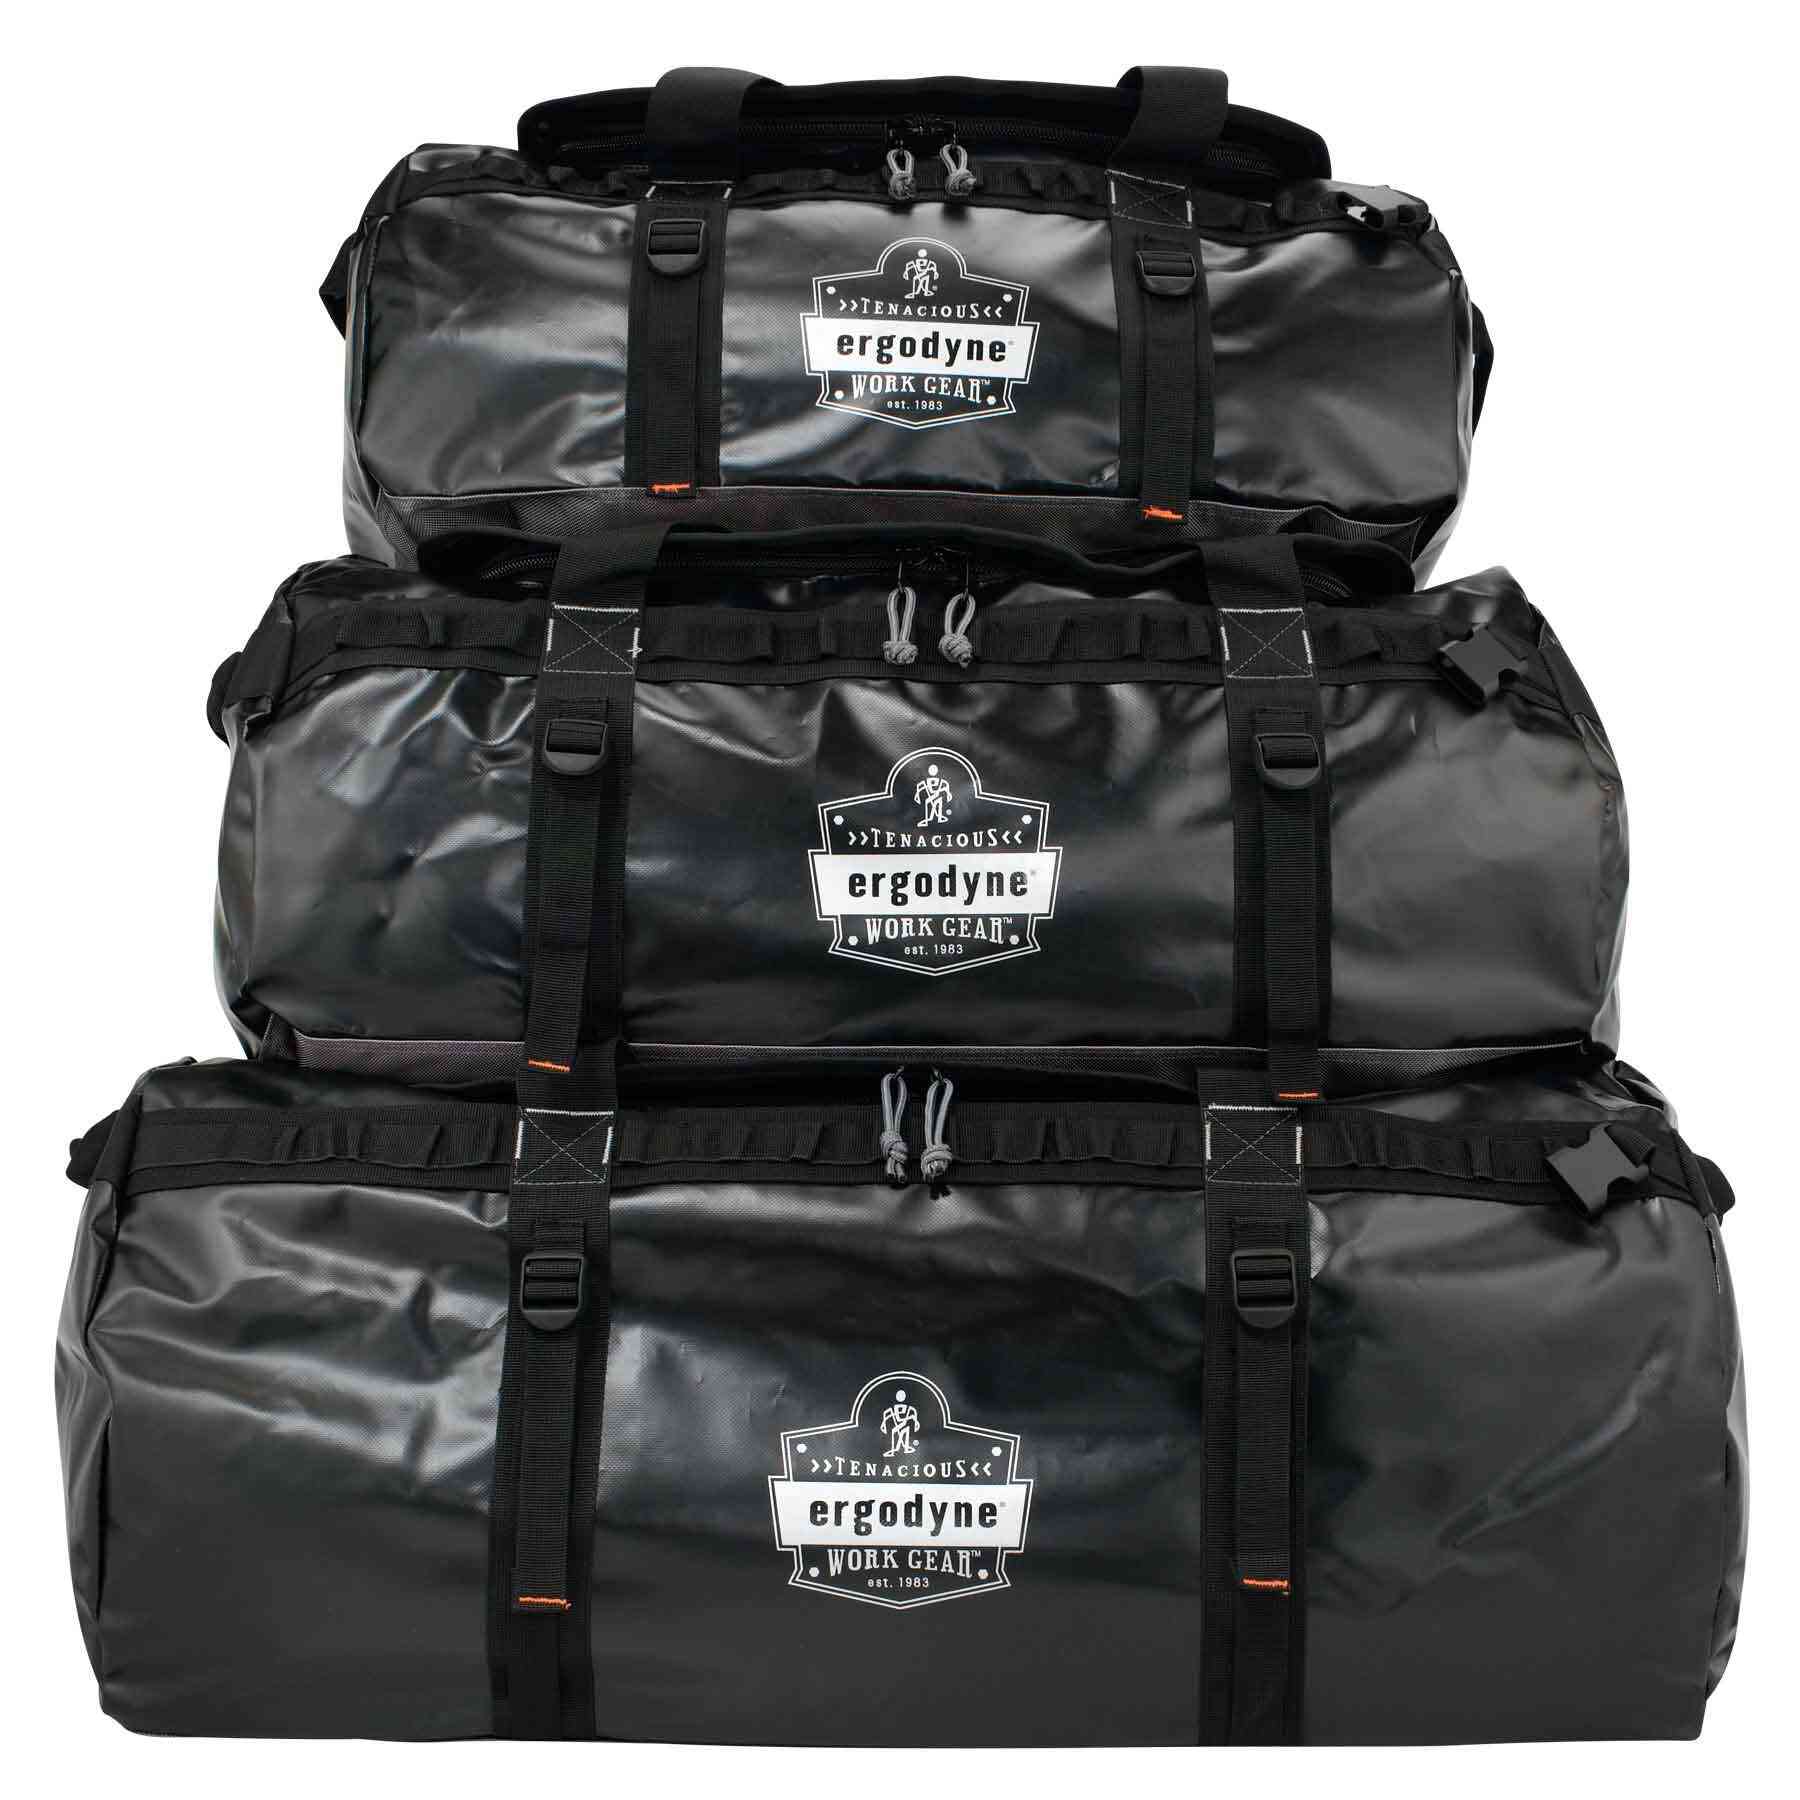 Arsenal® 5030 Water Resistant Duffel Bag